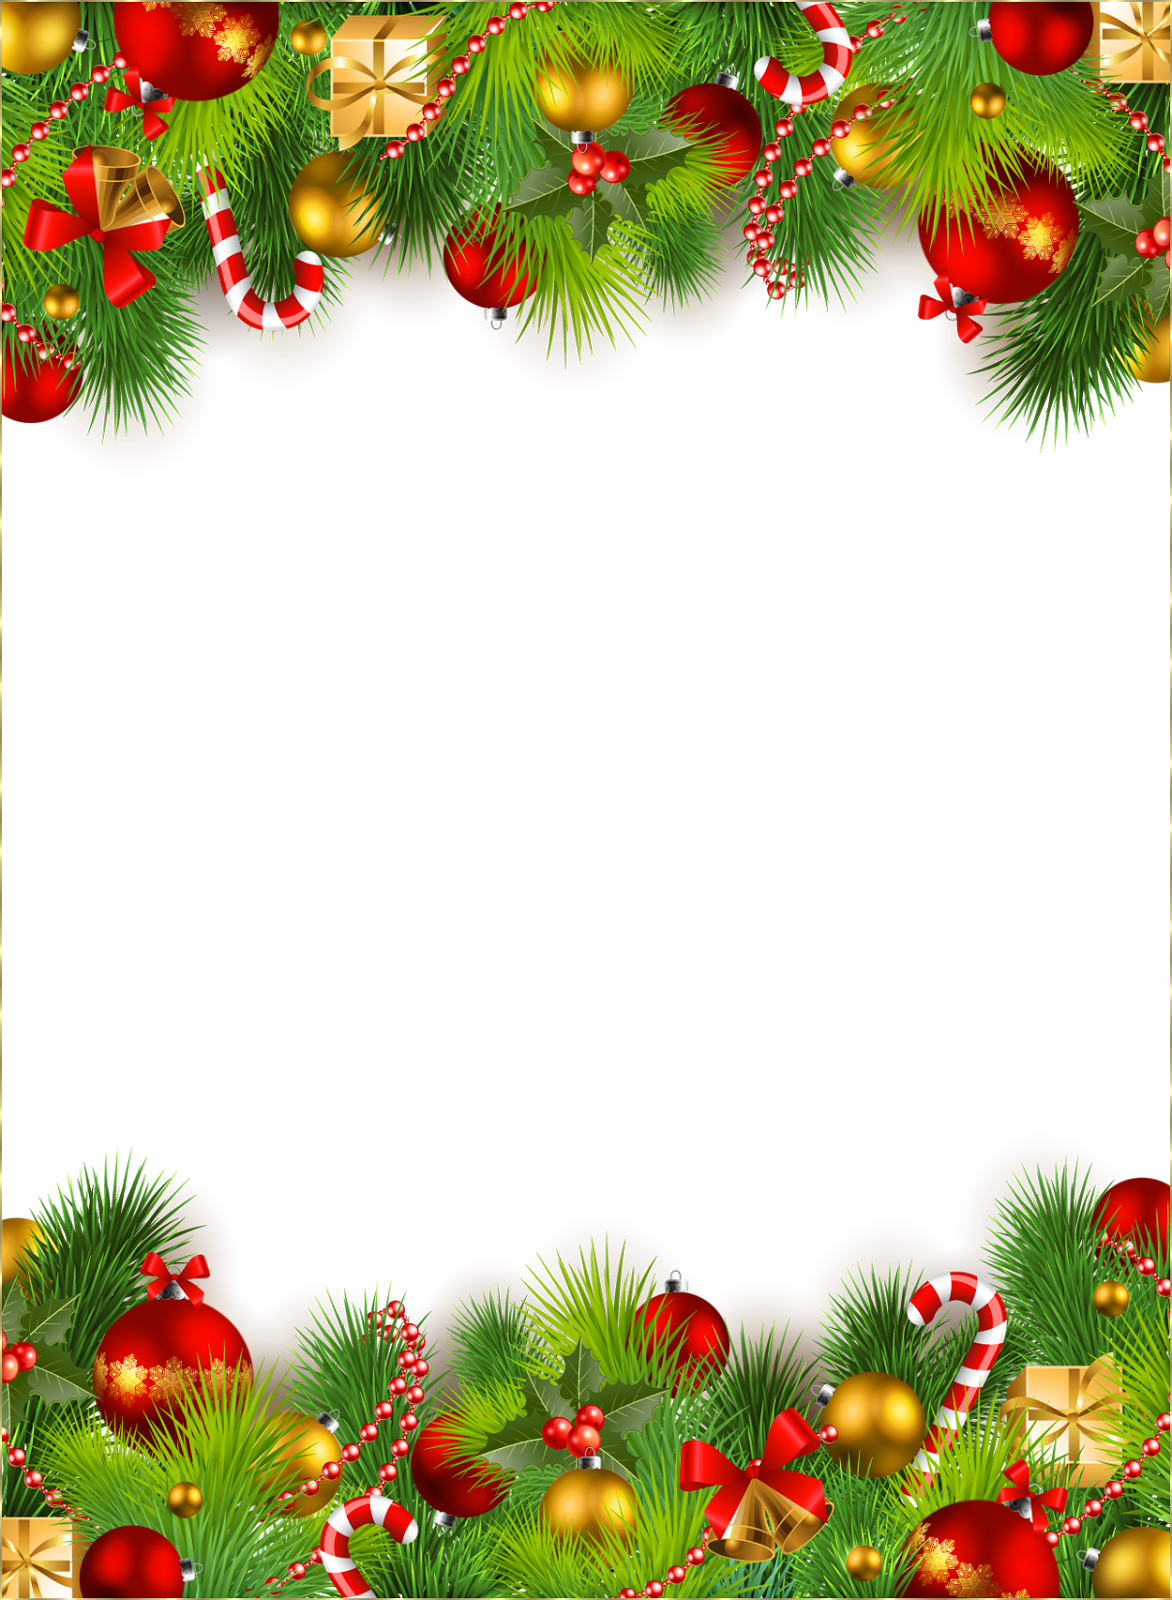 name editing wallpapers free download,christmas decoration,oregon pine,christmas tree,christmas ornament,fir